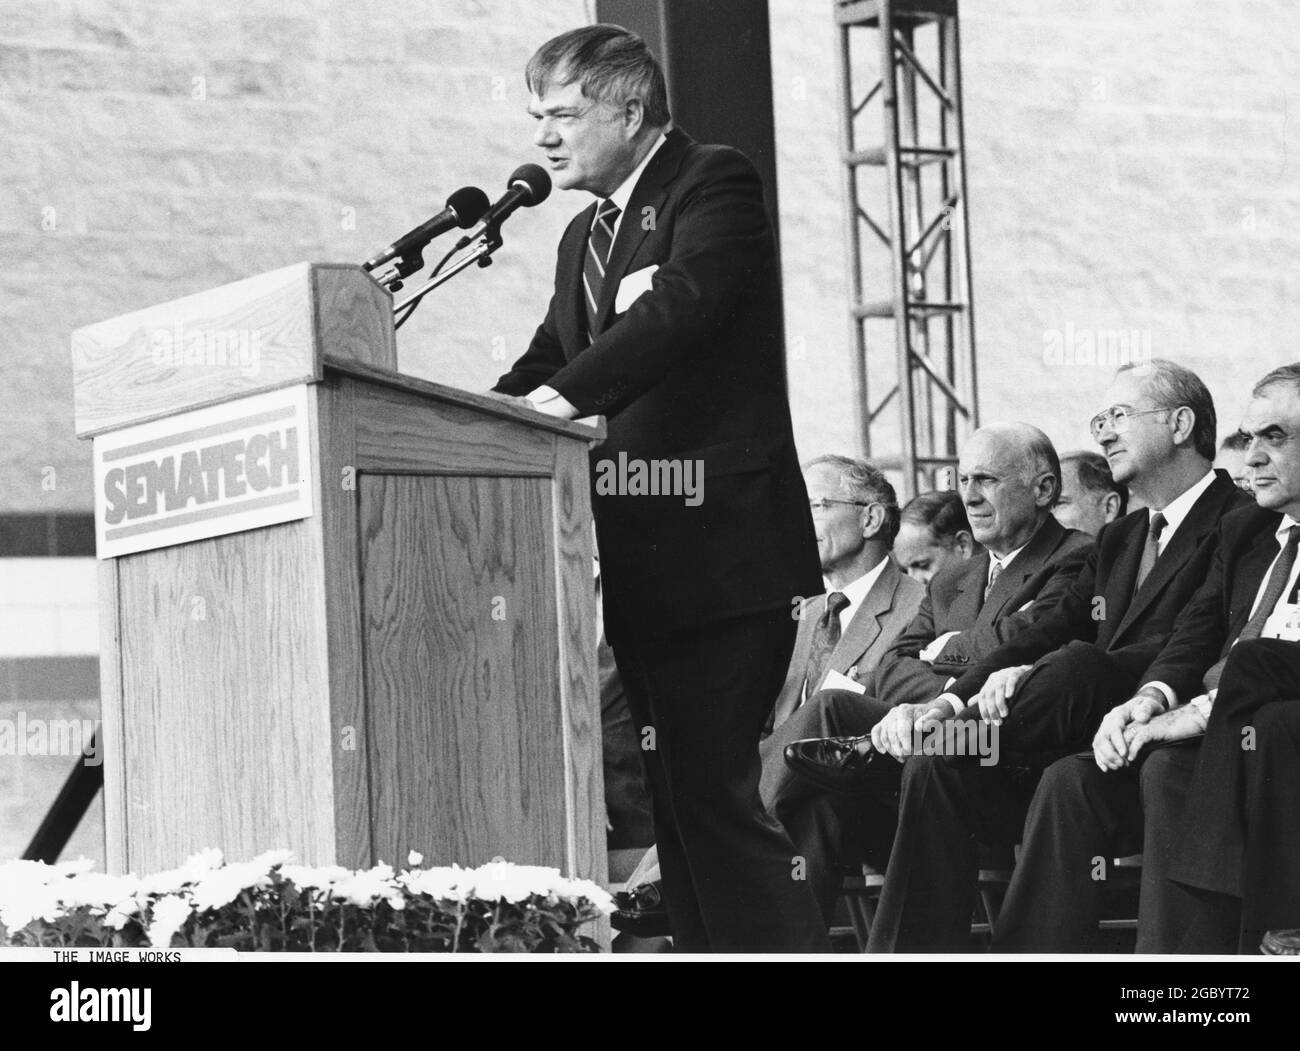 Austin Texas USA, 1987: Dignitaire parle devant un grand public de chefs d'entreprise et de haute technologie lors d'une cérémonie révolutionnaire pour le consortium de recherche Sematech dans l'est d'Austin. ©Bob Daemmrich Banque D'Images